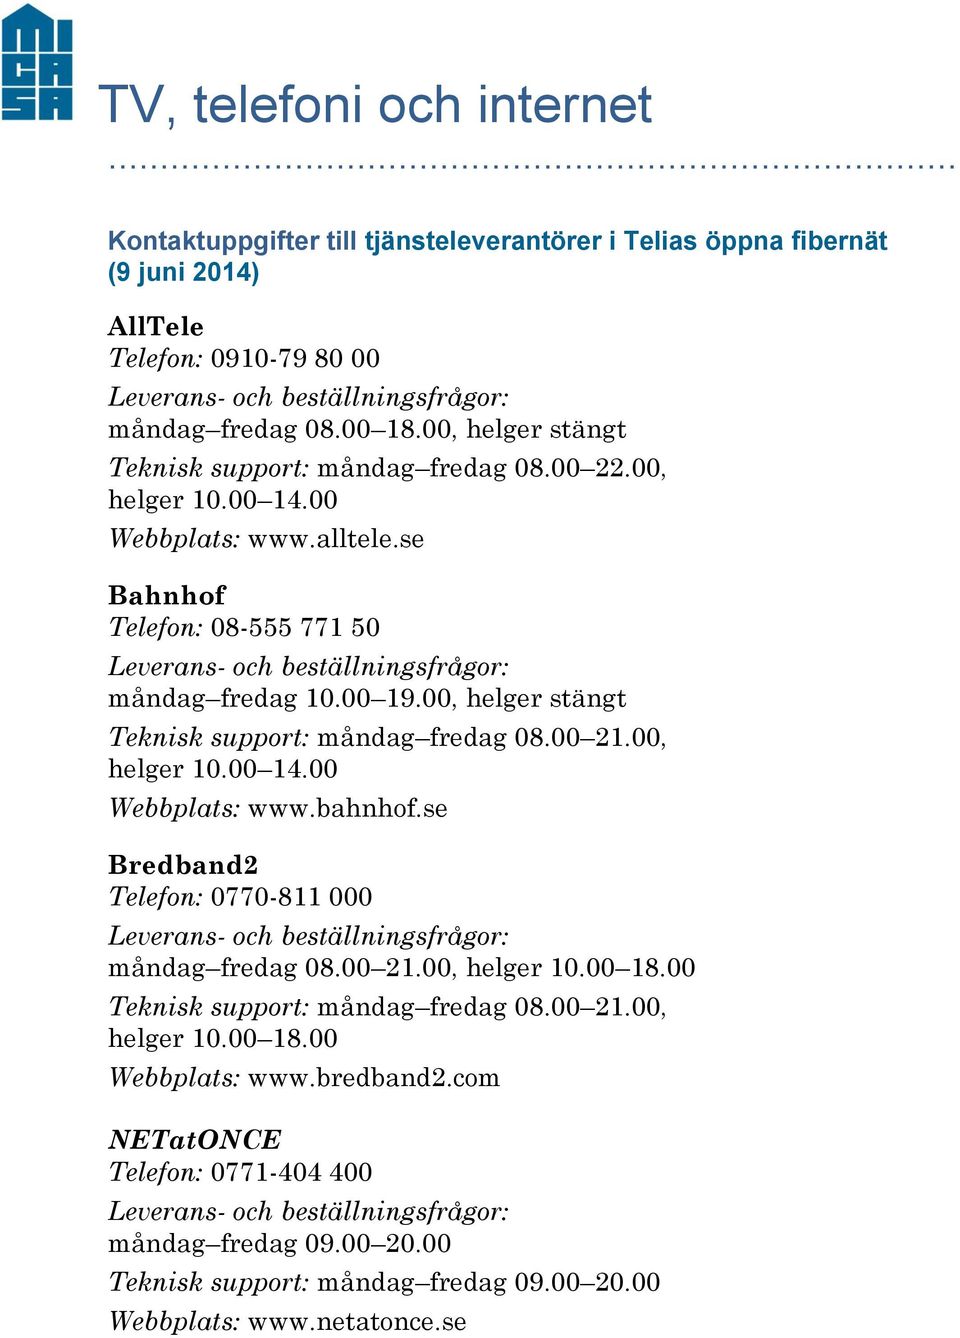 00, helger stängt Teknisk support: måndag fredag 08.00 21.00, Webbplats: www.bahnhof.se Bredband2 Telefon: 0770-811 000 måndag fredag 08.00 21.00, helger 10.00 18.